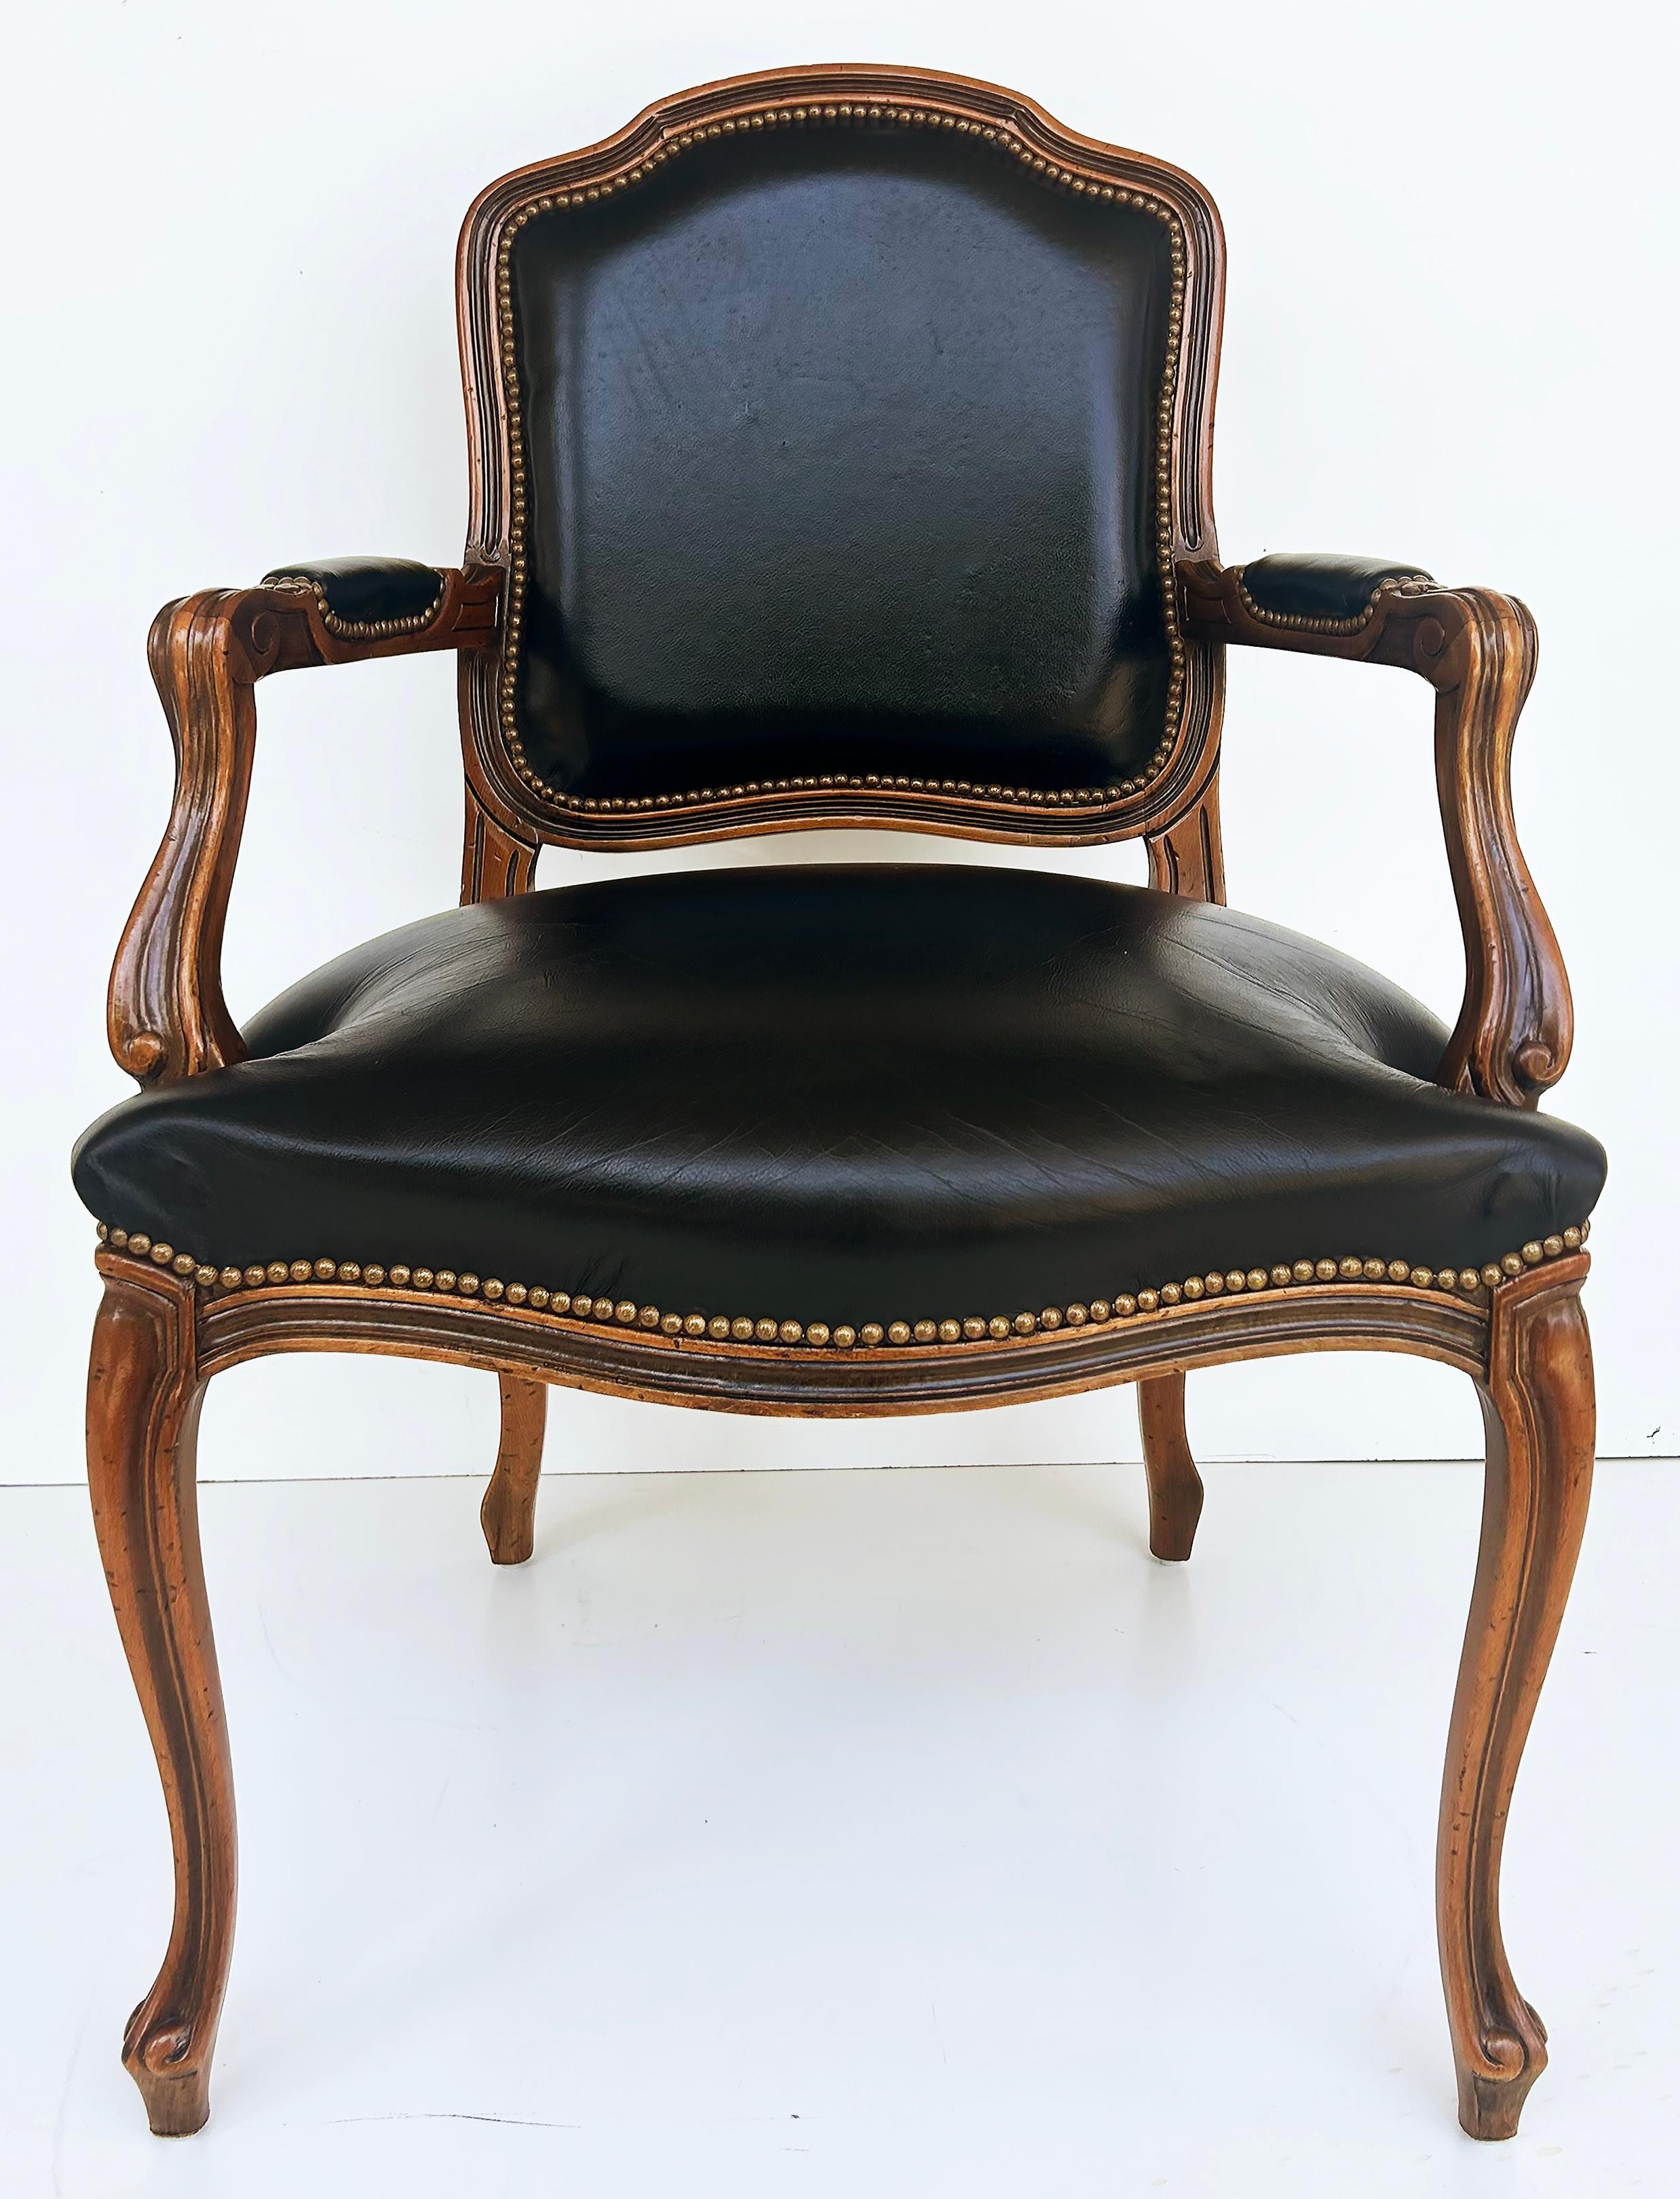 Italienische Chateau D'Ax-Ledersessel im Vintage-Stil mit Messingnagelkopf-Details, Paar

Zum Verkauf angeboten wird ein Paar italienische Sessel mit schwarzer Lederpolsterung und Messingnägeln von Chateau D'Ax S.P.A. Milano. Die Stühle sind gut